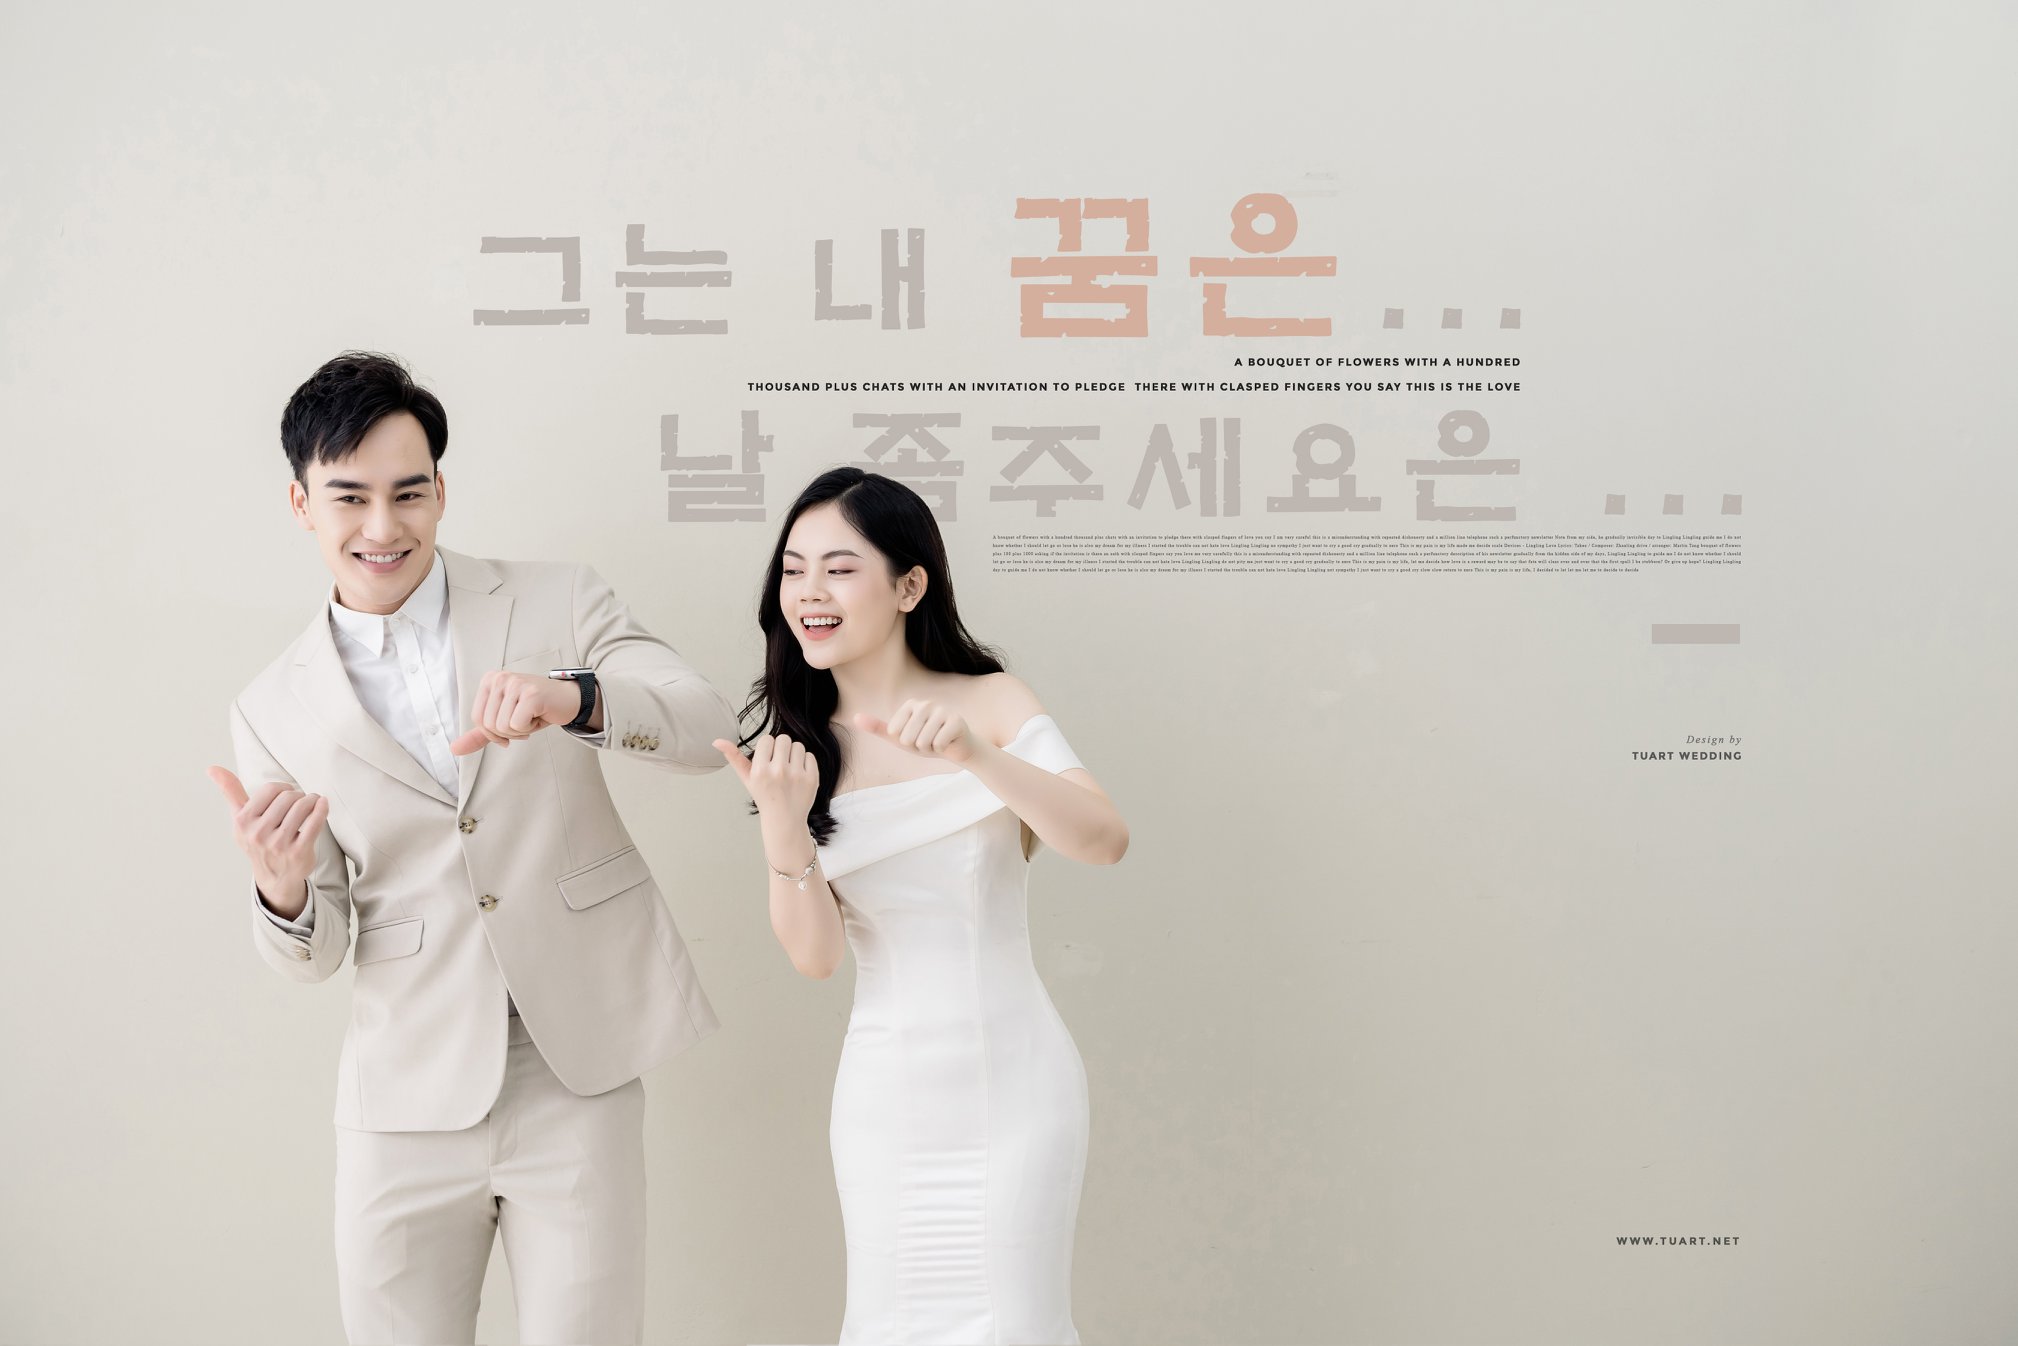 Album ảnh cưới đẹp Hàn Quốc